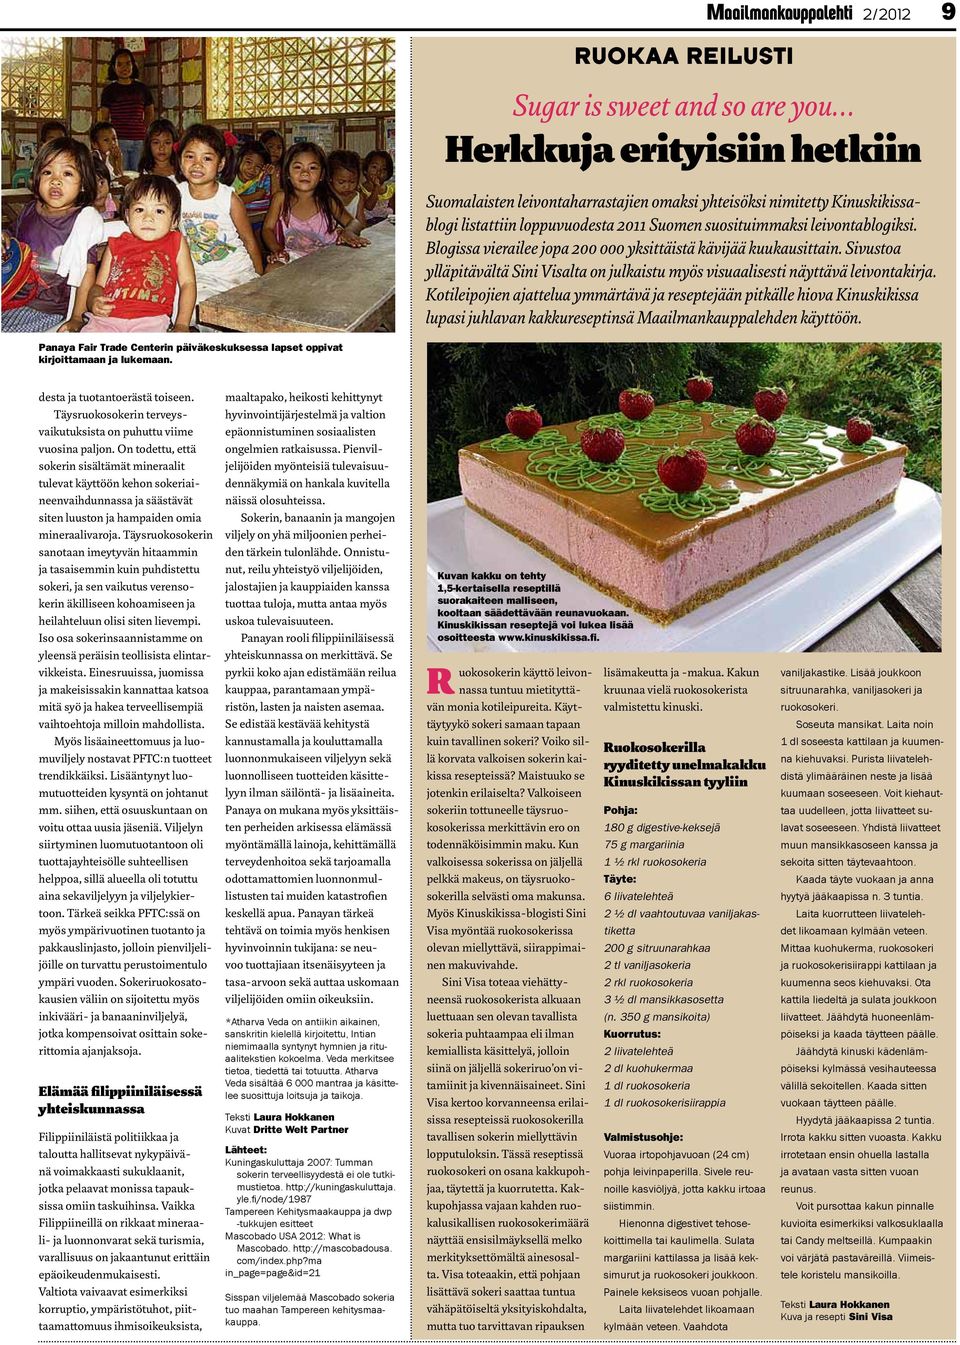 Kotileipojien ajattelua ymmärtävä ja reseptejään pitkälle hiova Kinuskikissa lupasi juhlavan kakkureseptinsä Maailmankauppalehden käyttöön.